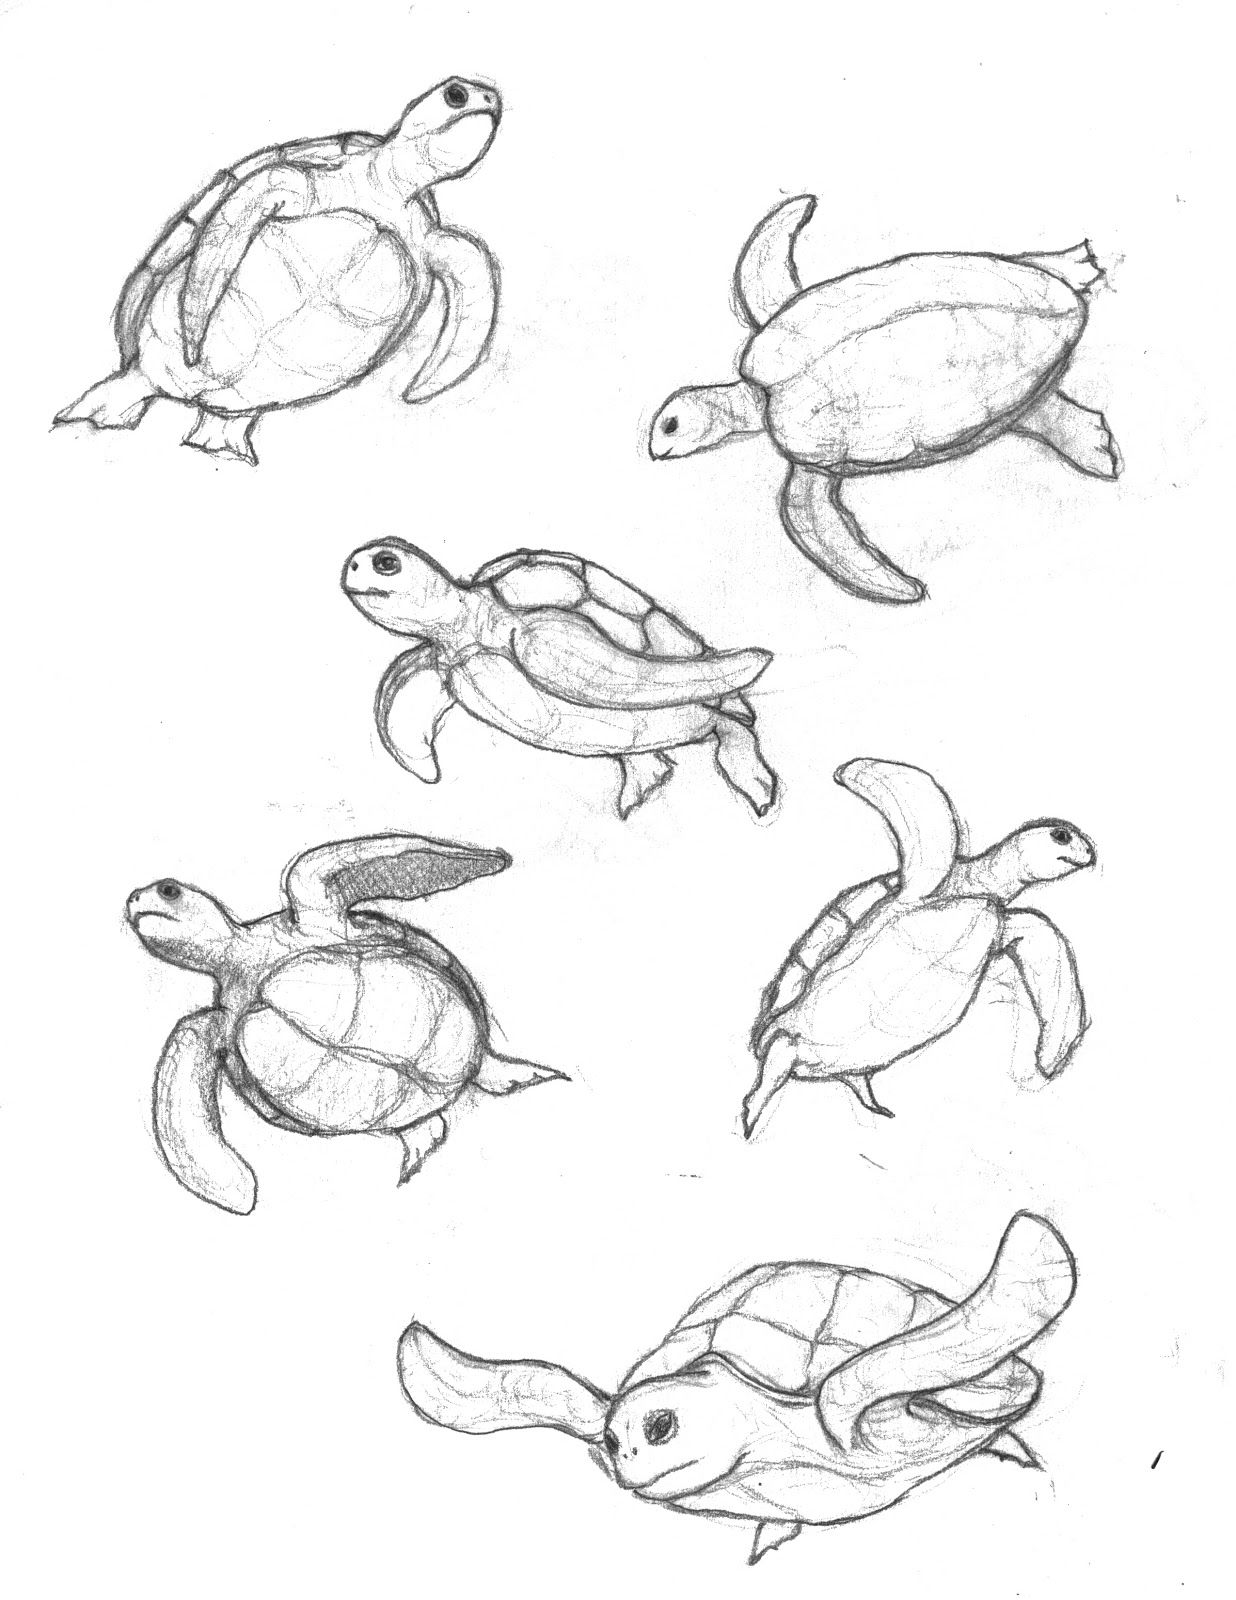  Paso a paso para dibujar una linda tortuga nadando